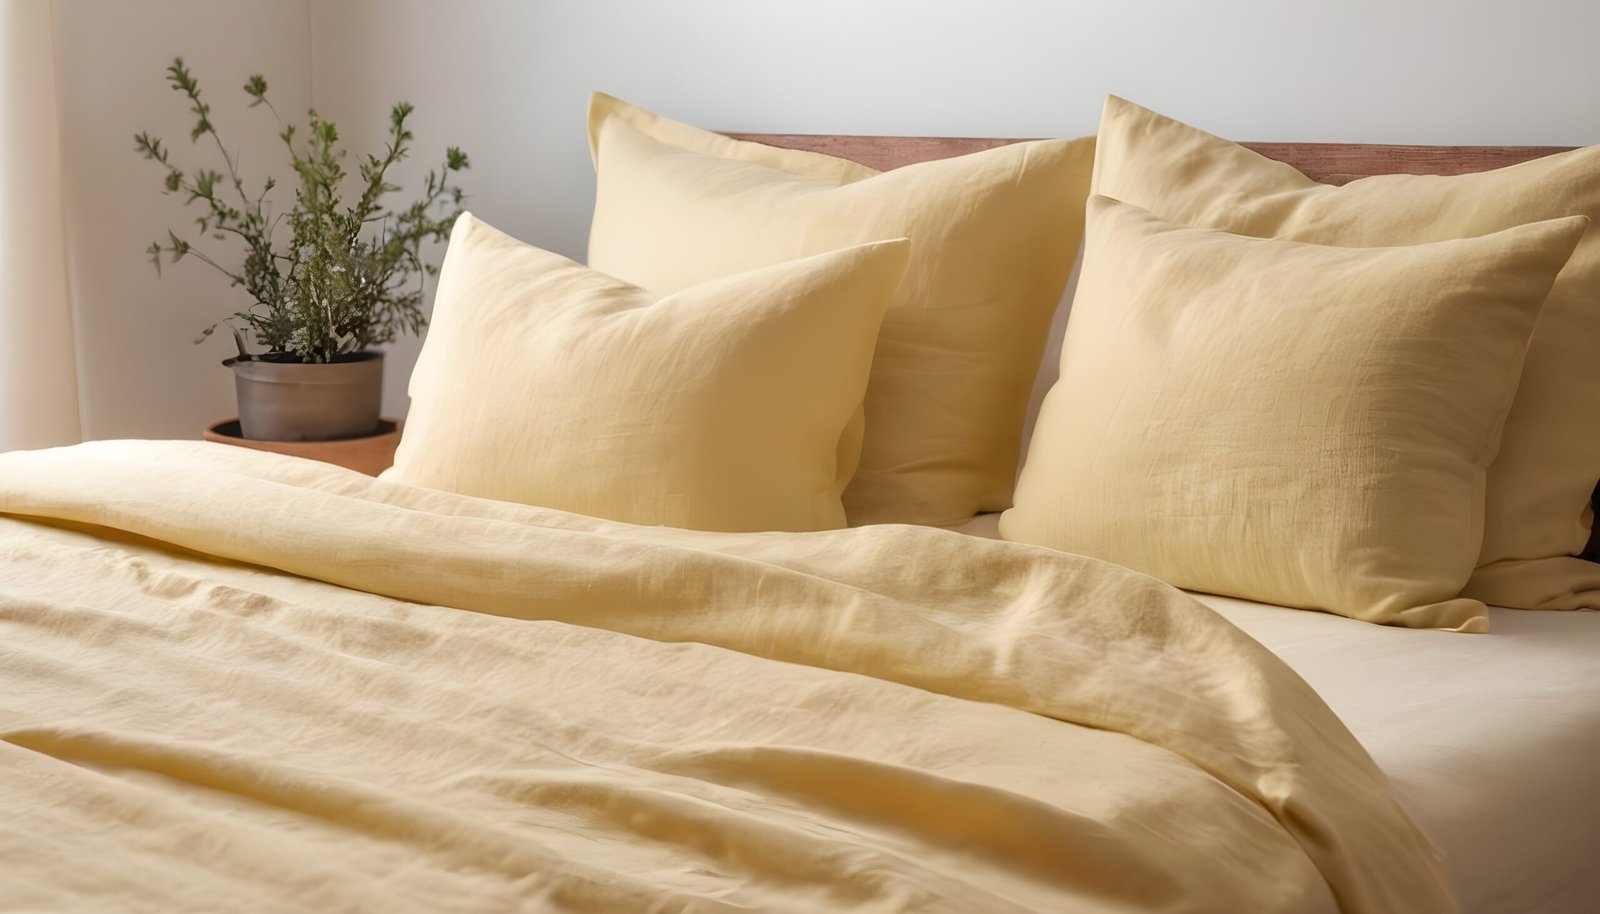 Yellow bed sheet arrangement.